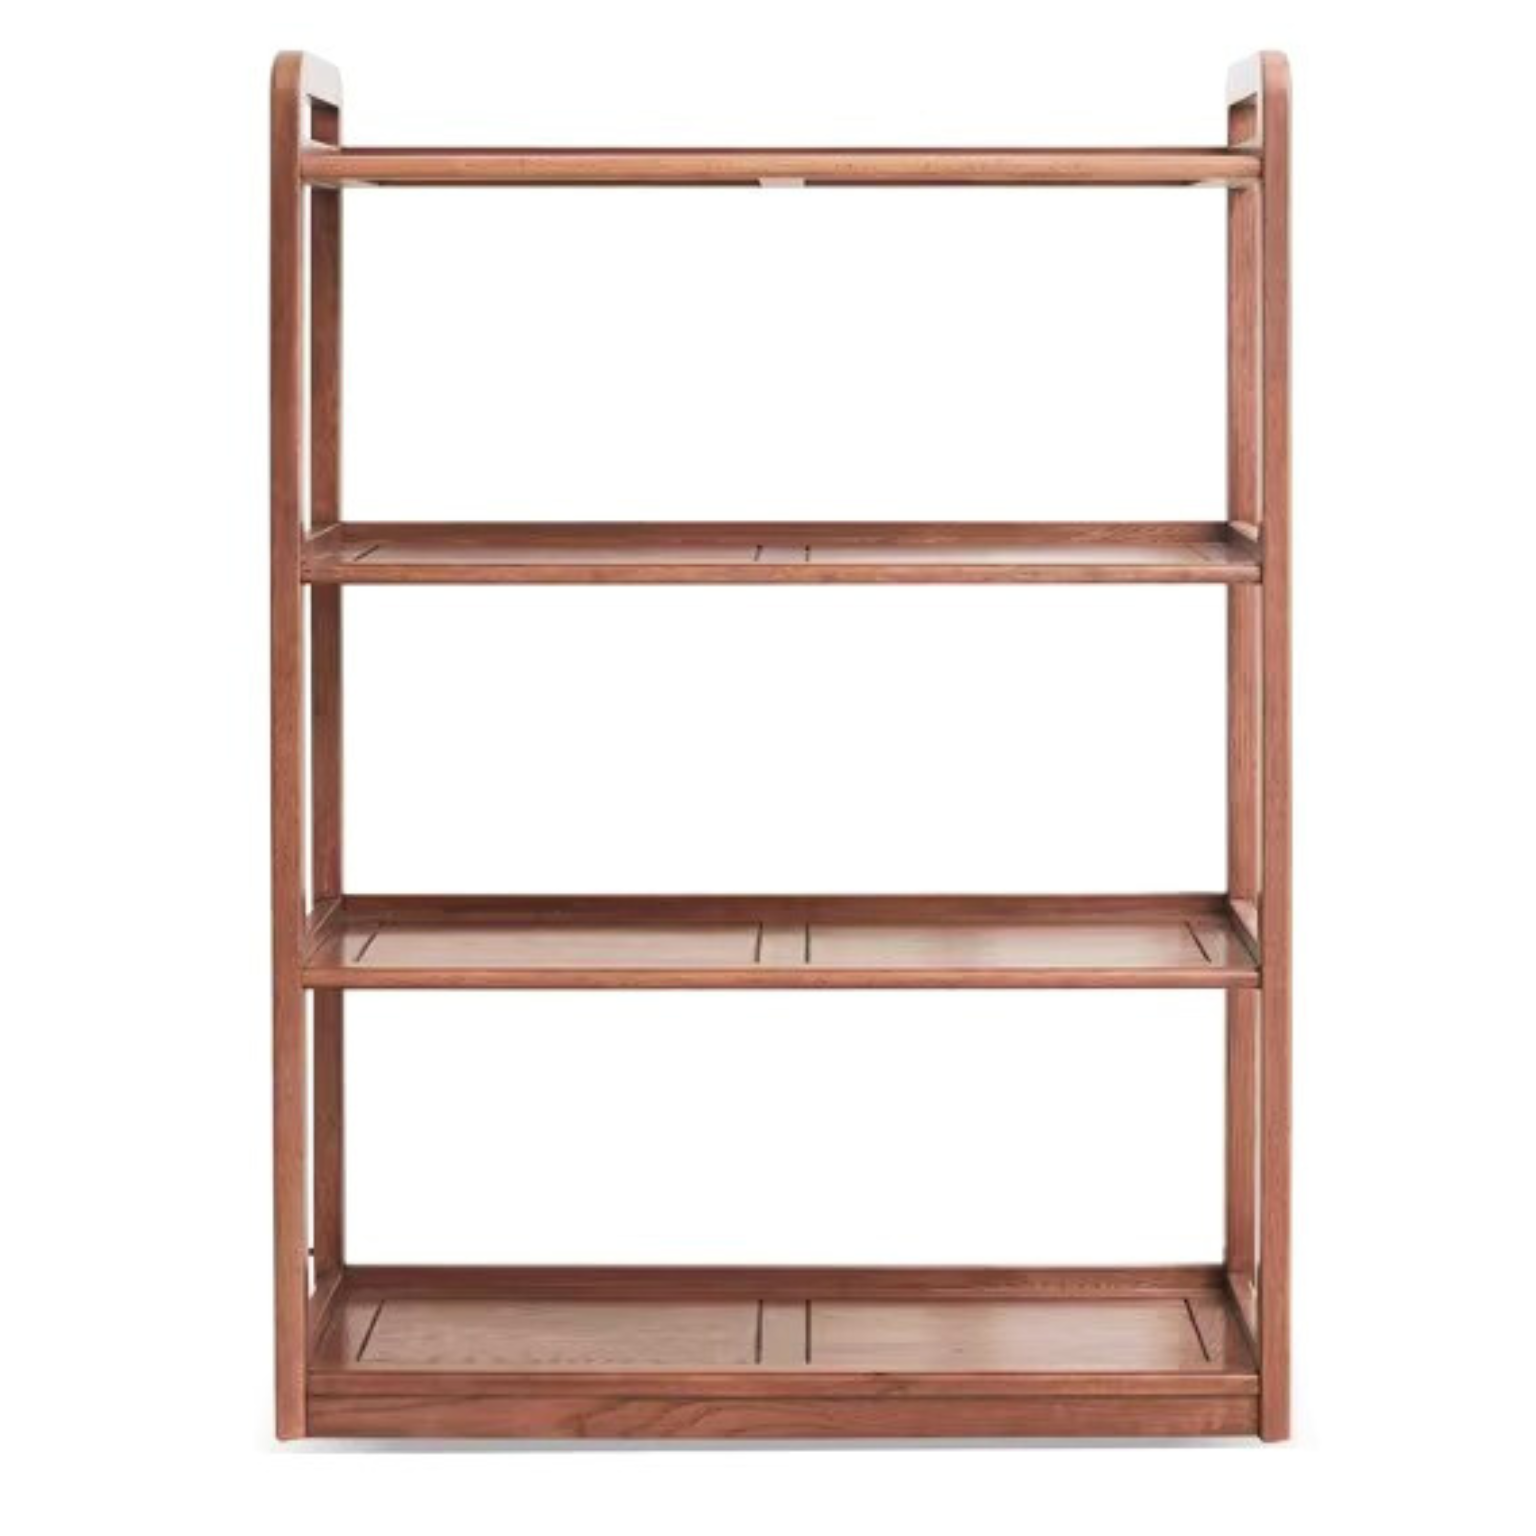 Oak solid wood floor-standing bookshelf, flower rack -